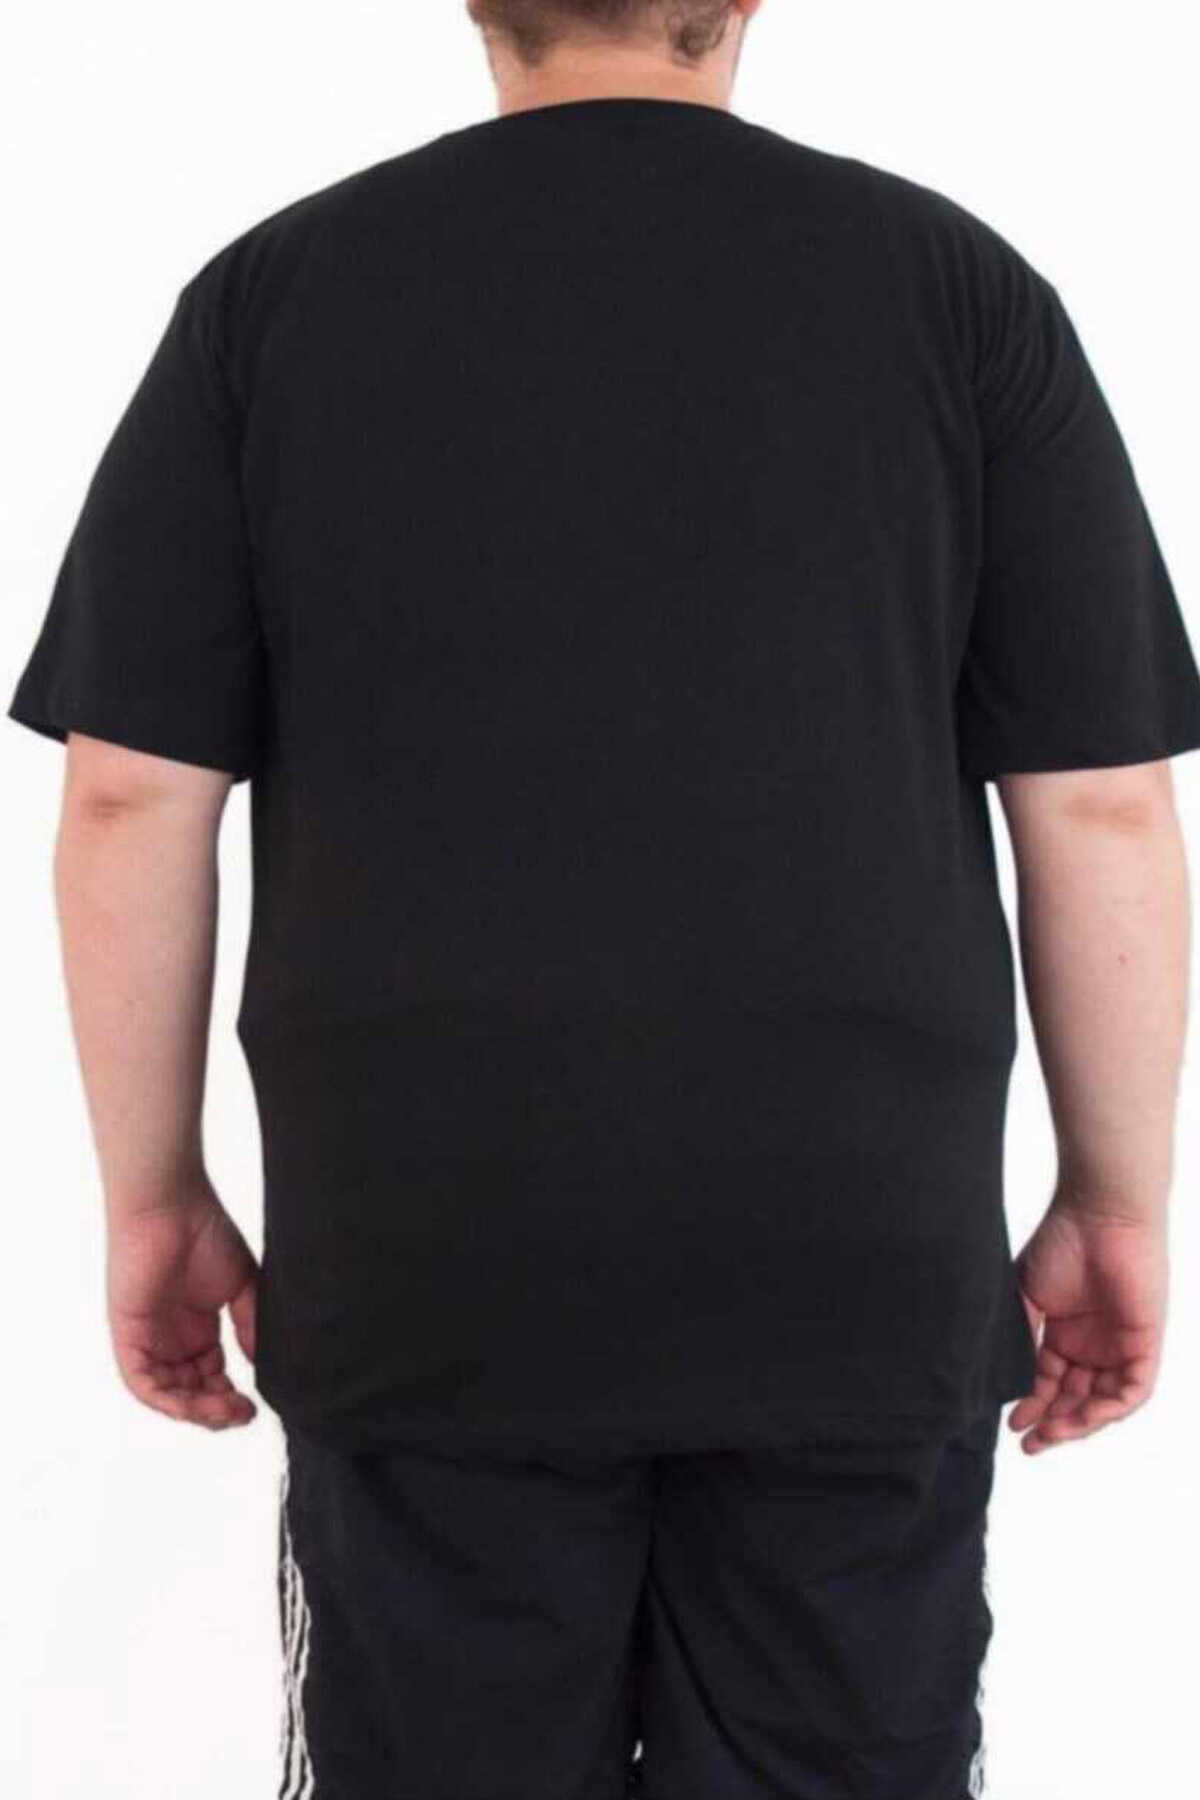 تیشرت یقه گرد چاپ دار سایز بزرگ مردانه مشکی برند Bant Giyim